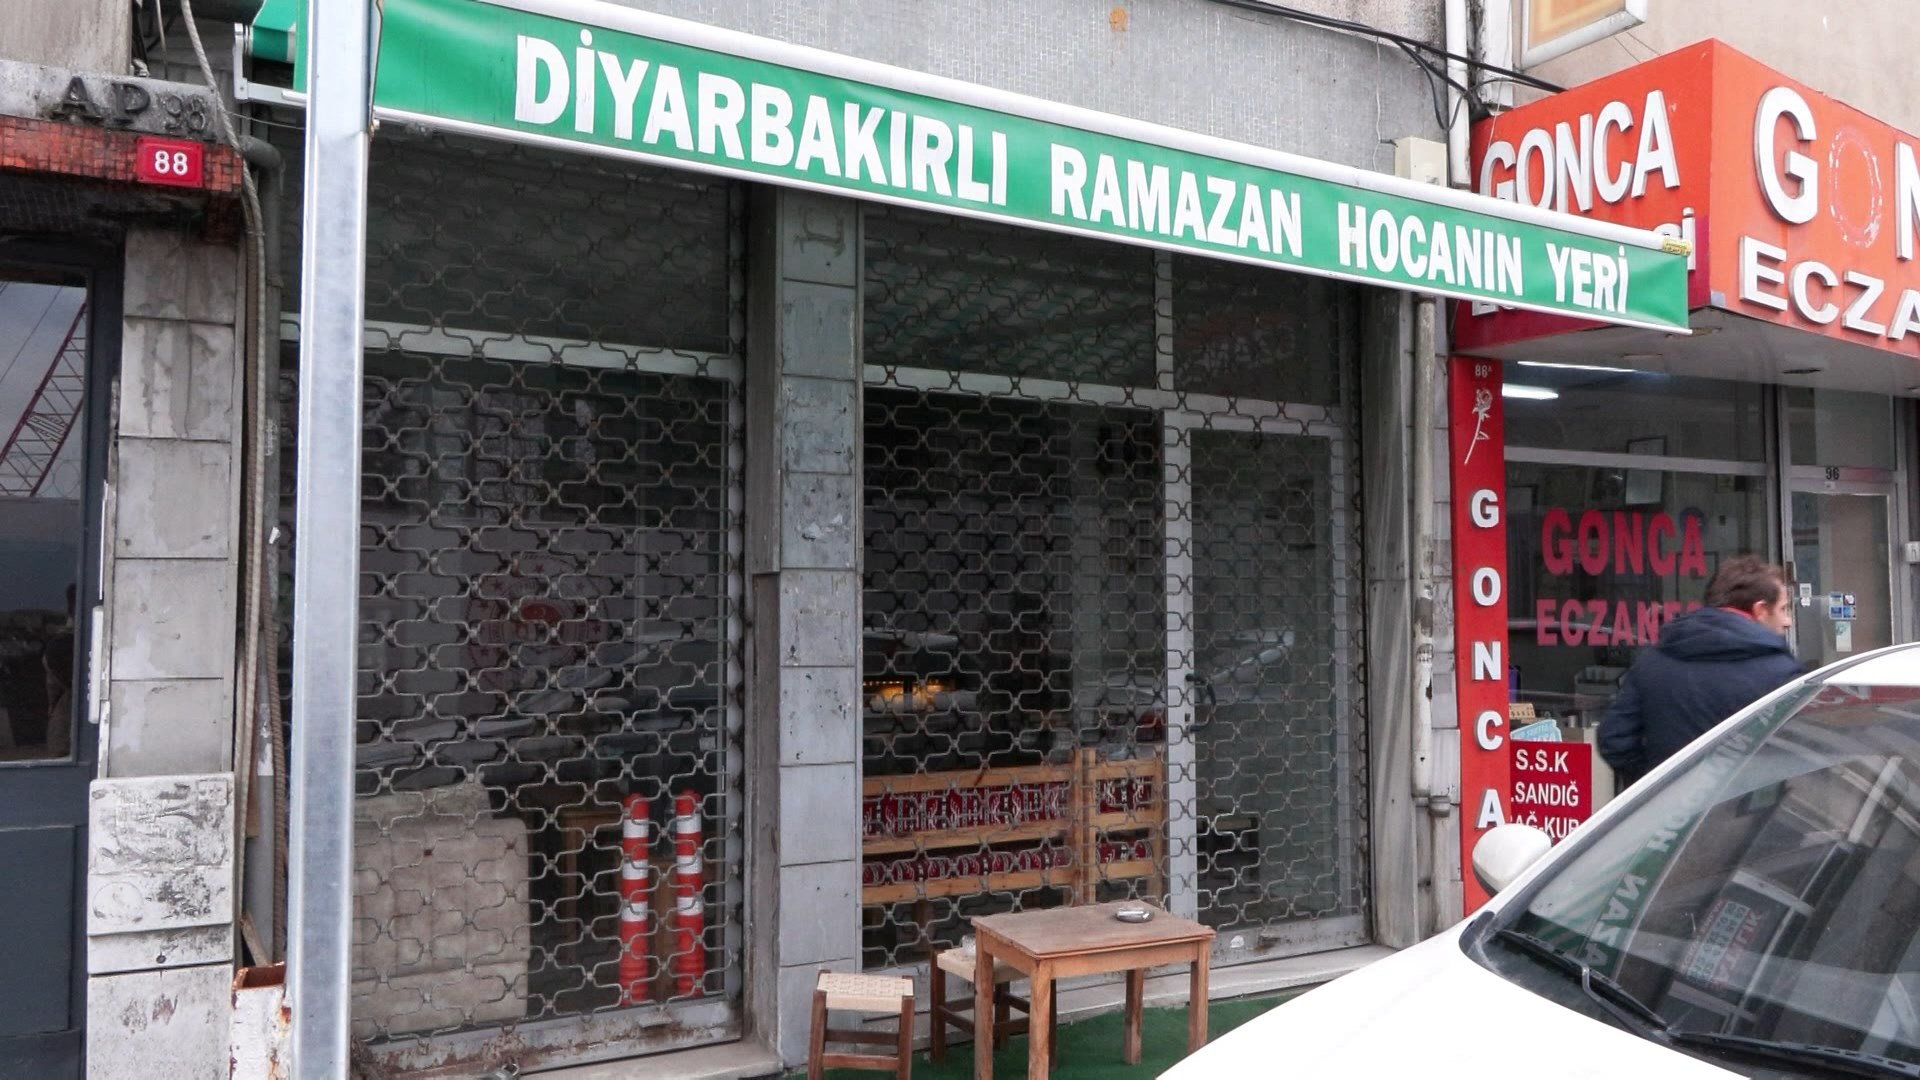 genis-haber-diyarbakirli-ramazan-hoca-olduruldu_4211_dhaphoto2